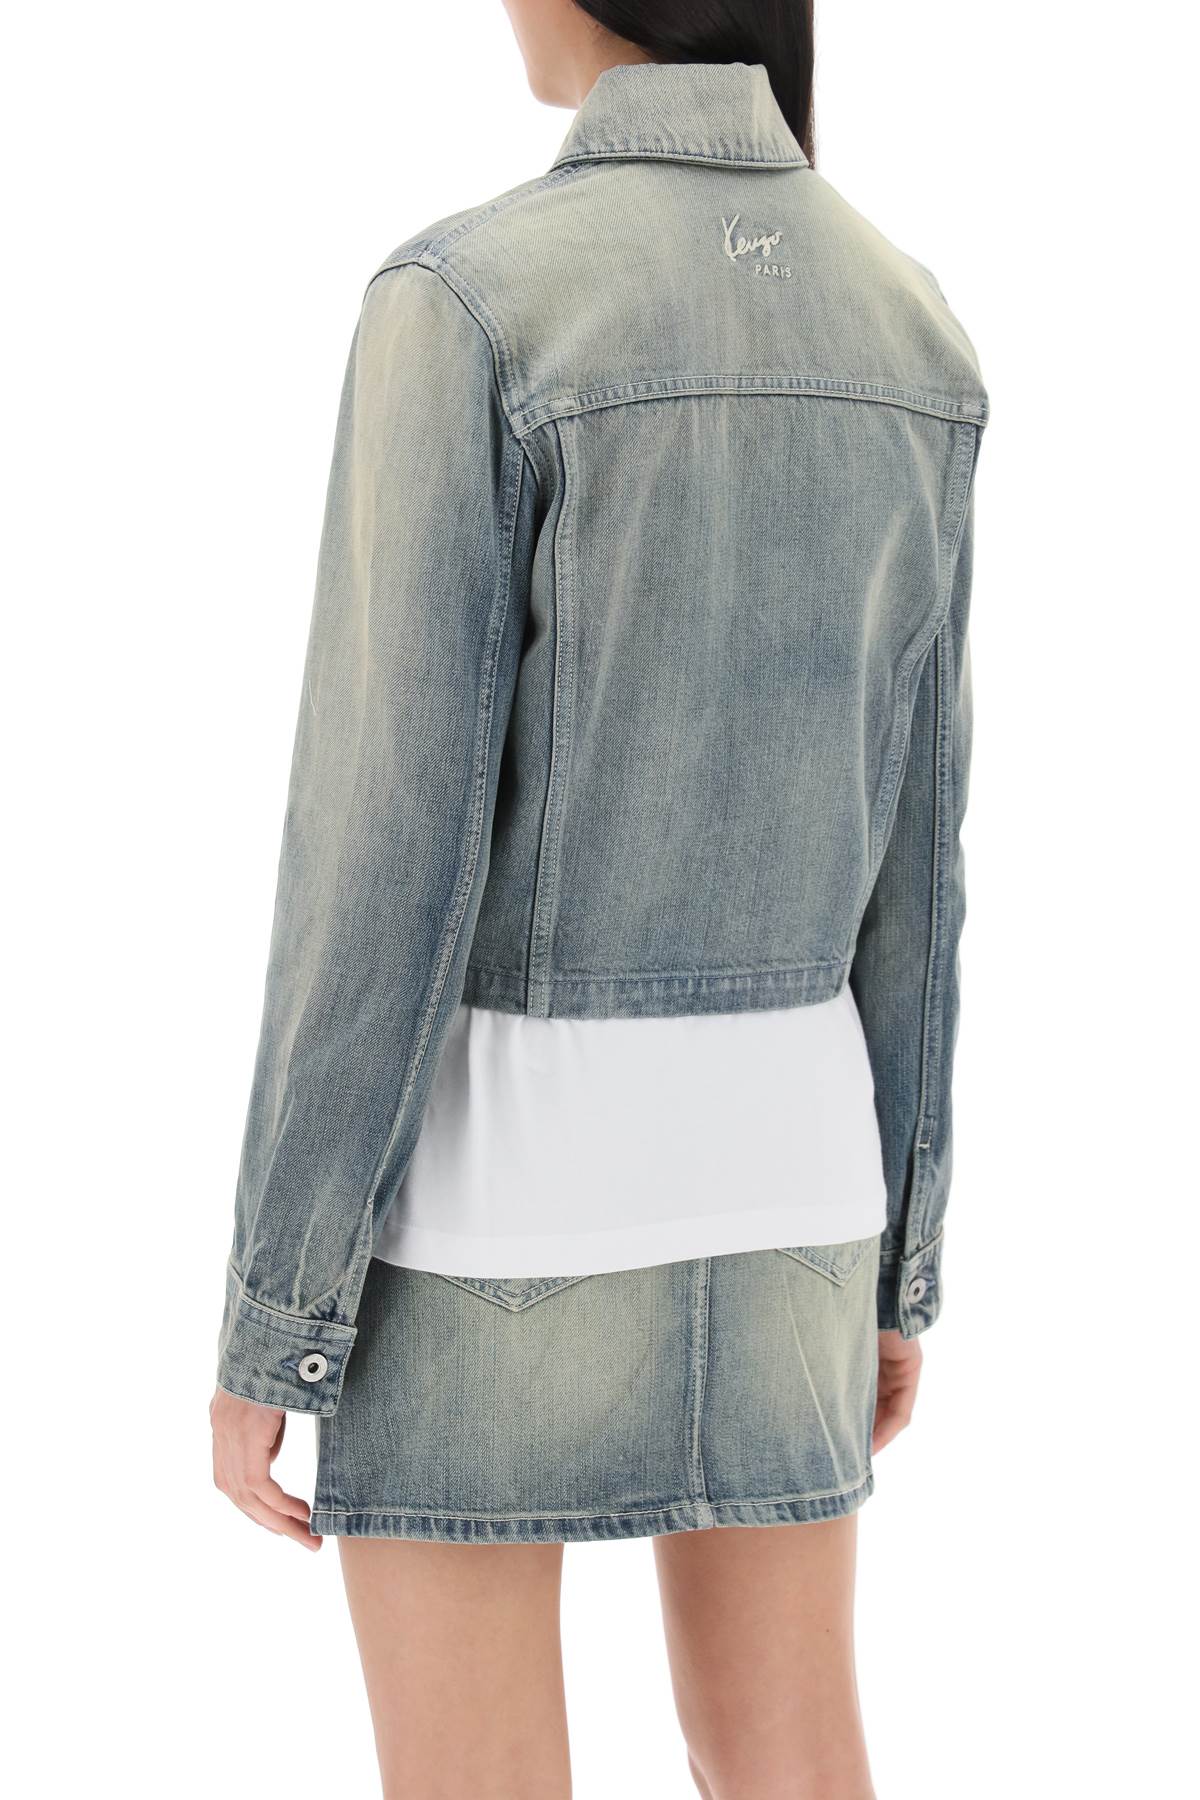 KENZO Japanese Denim Jacket - Lived-In Effect, Stone-Washed, Slightly Boxy, Cropped